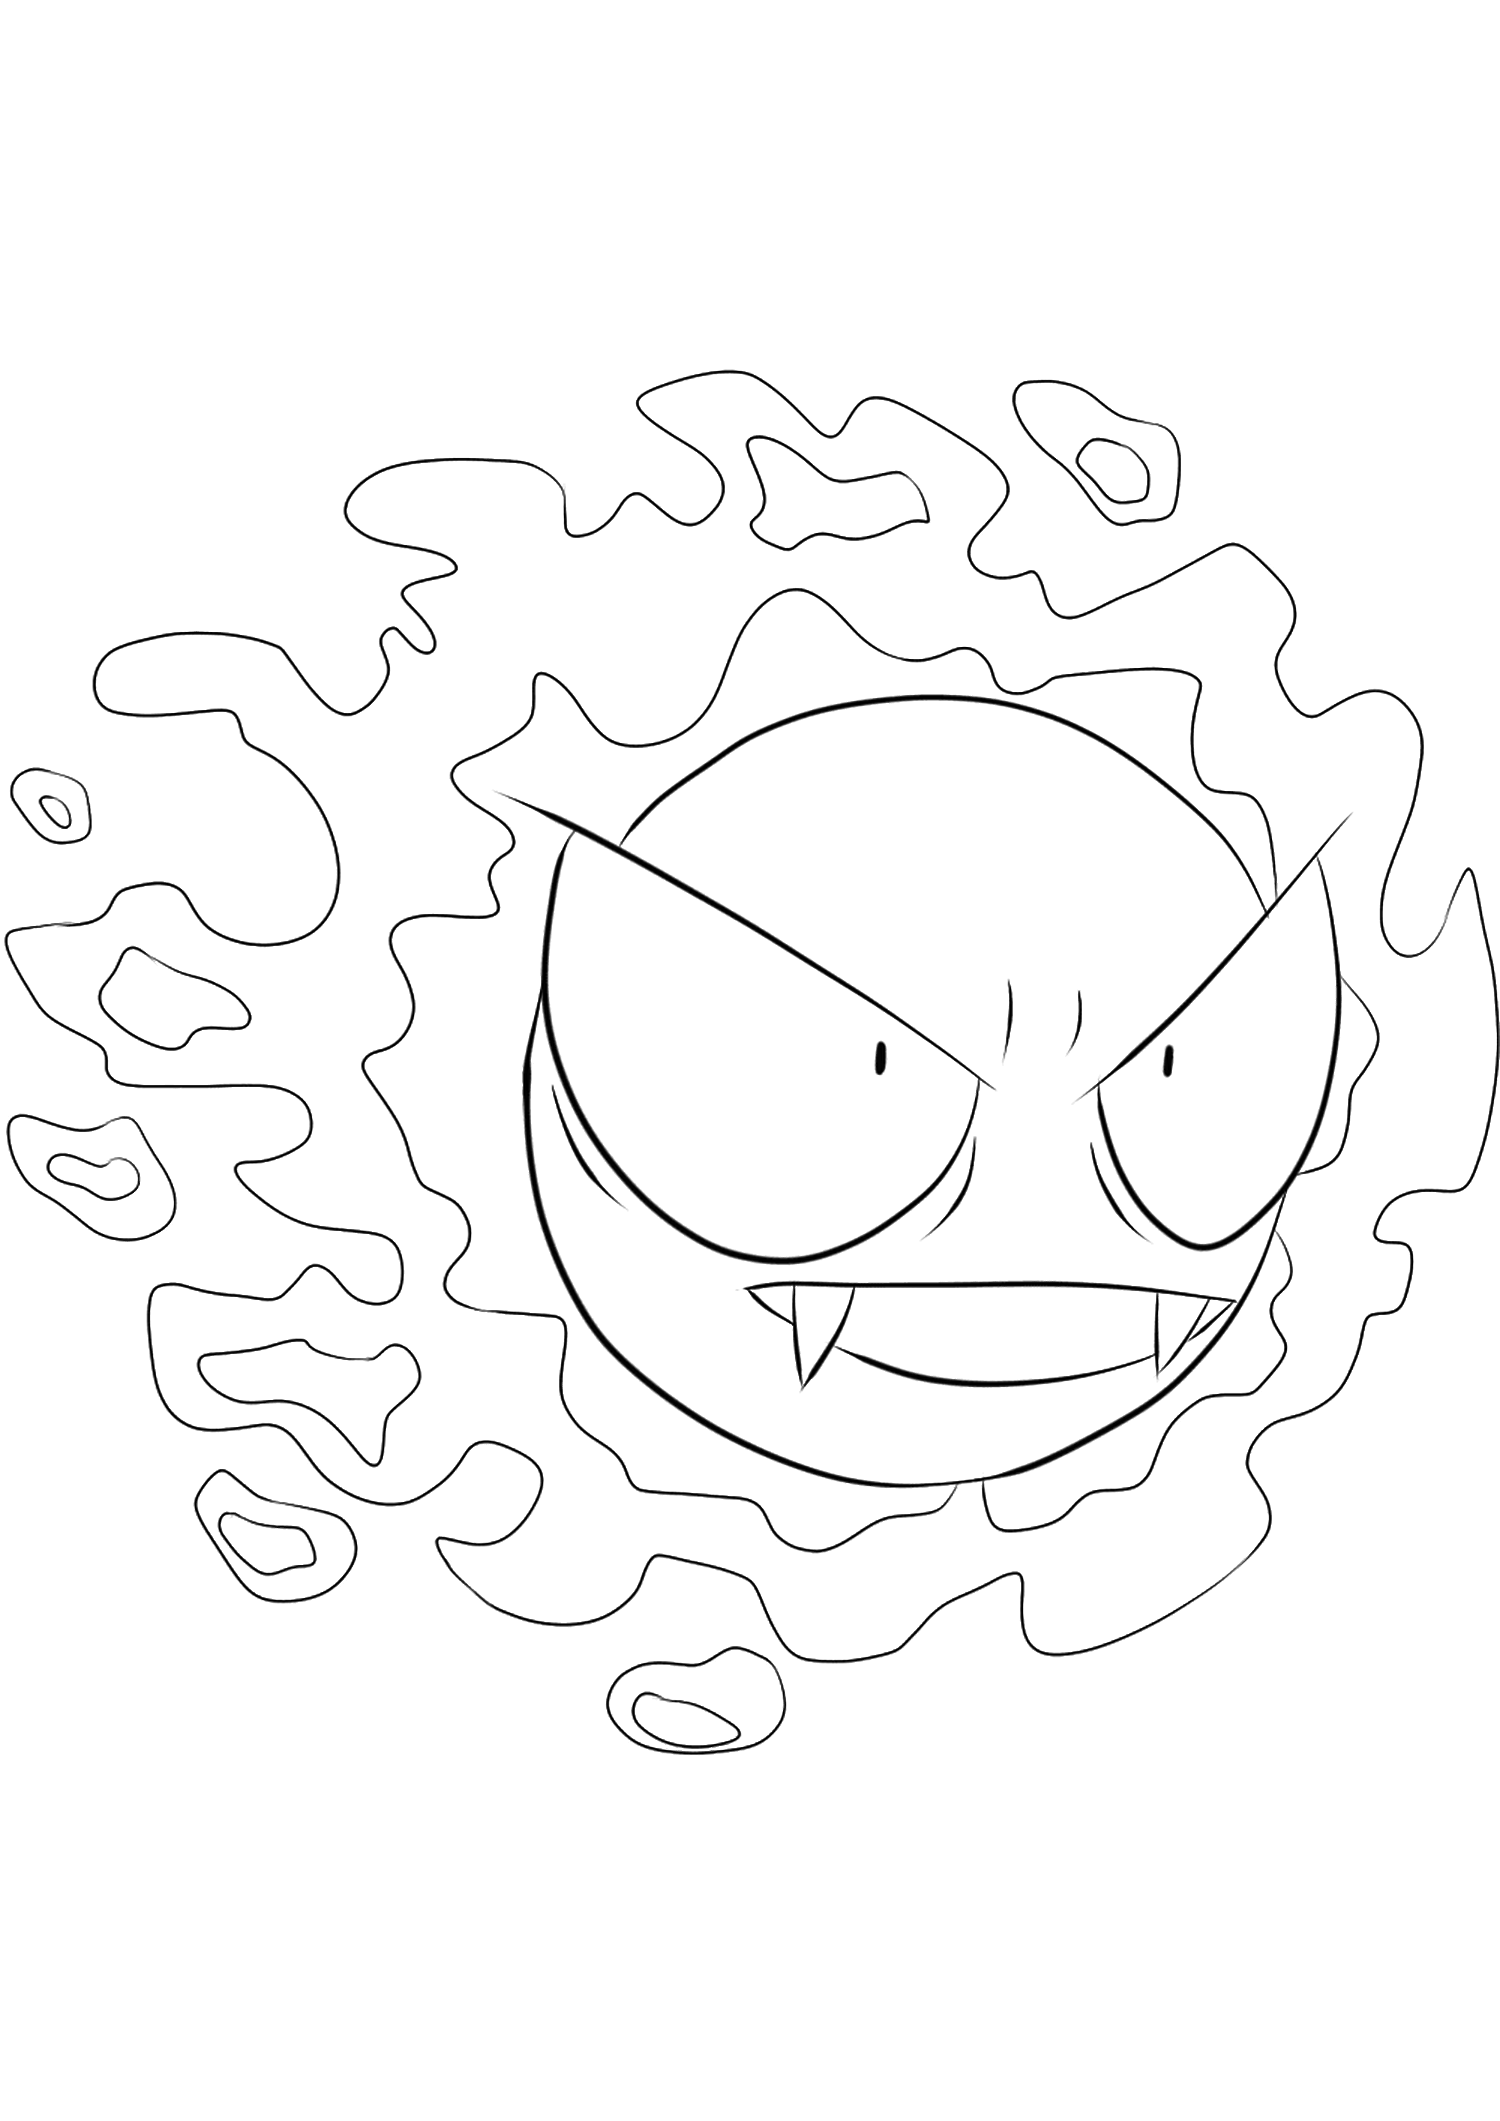 Desenho de Pokémon GO para colorir